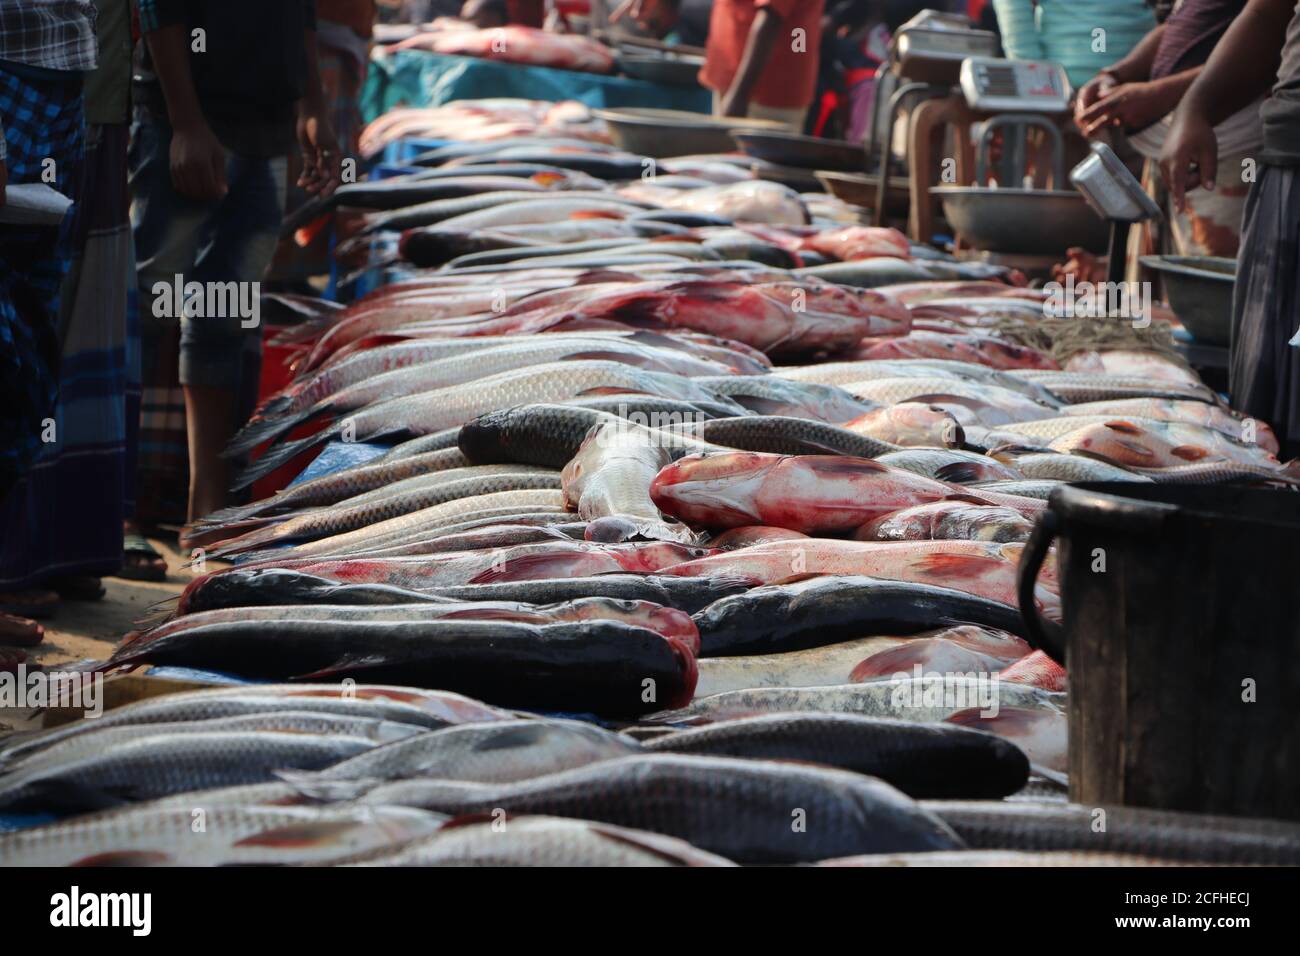 Ausstellung von Fischen auf einem bangladeschischen Fischmarkt. Menge von Käufern und Verkäufern Stockfoto